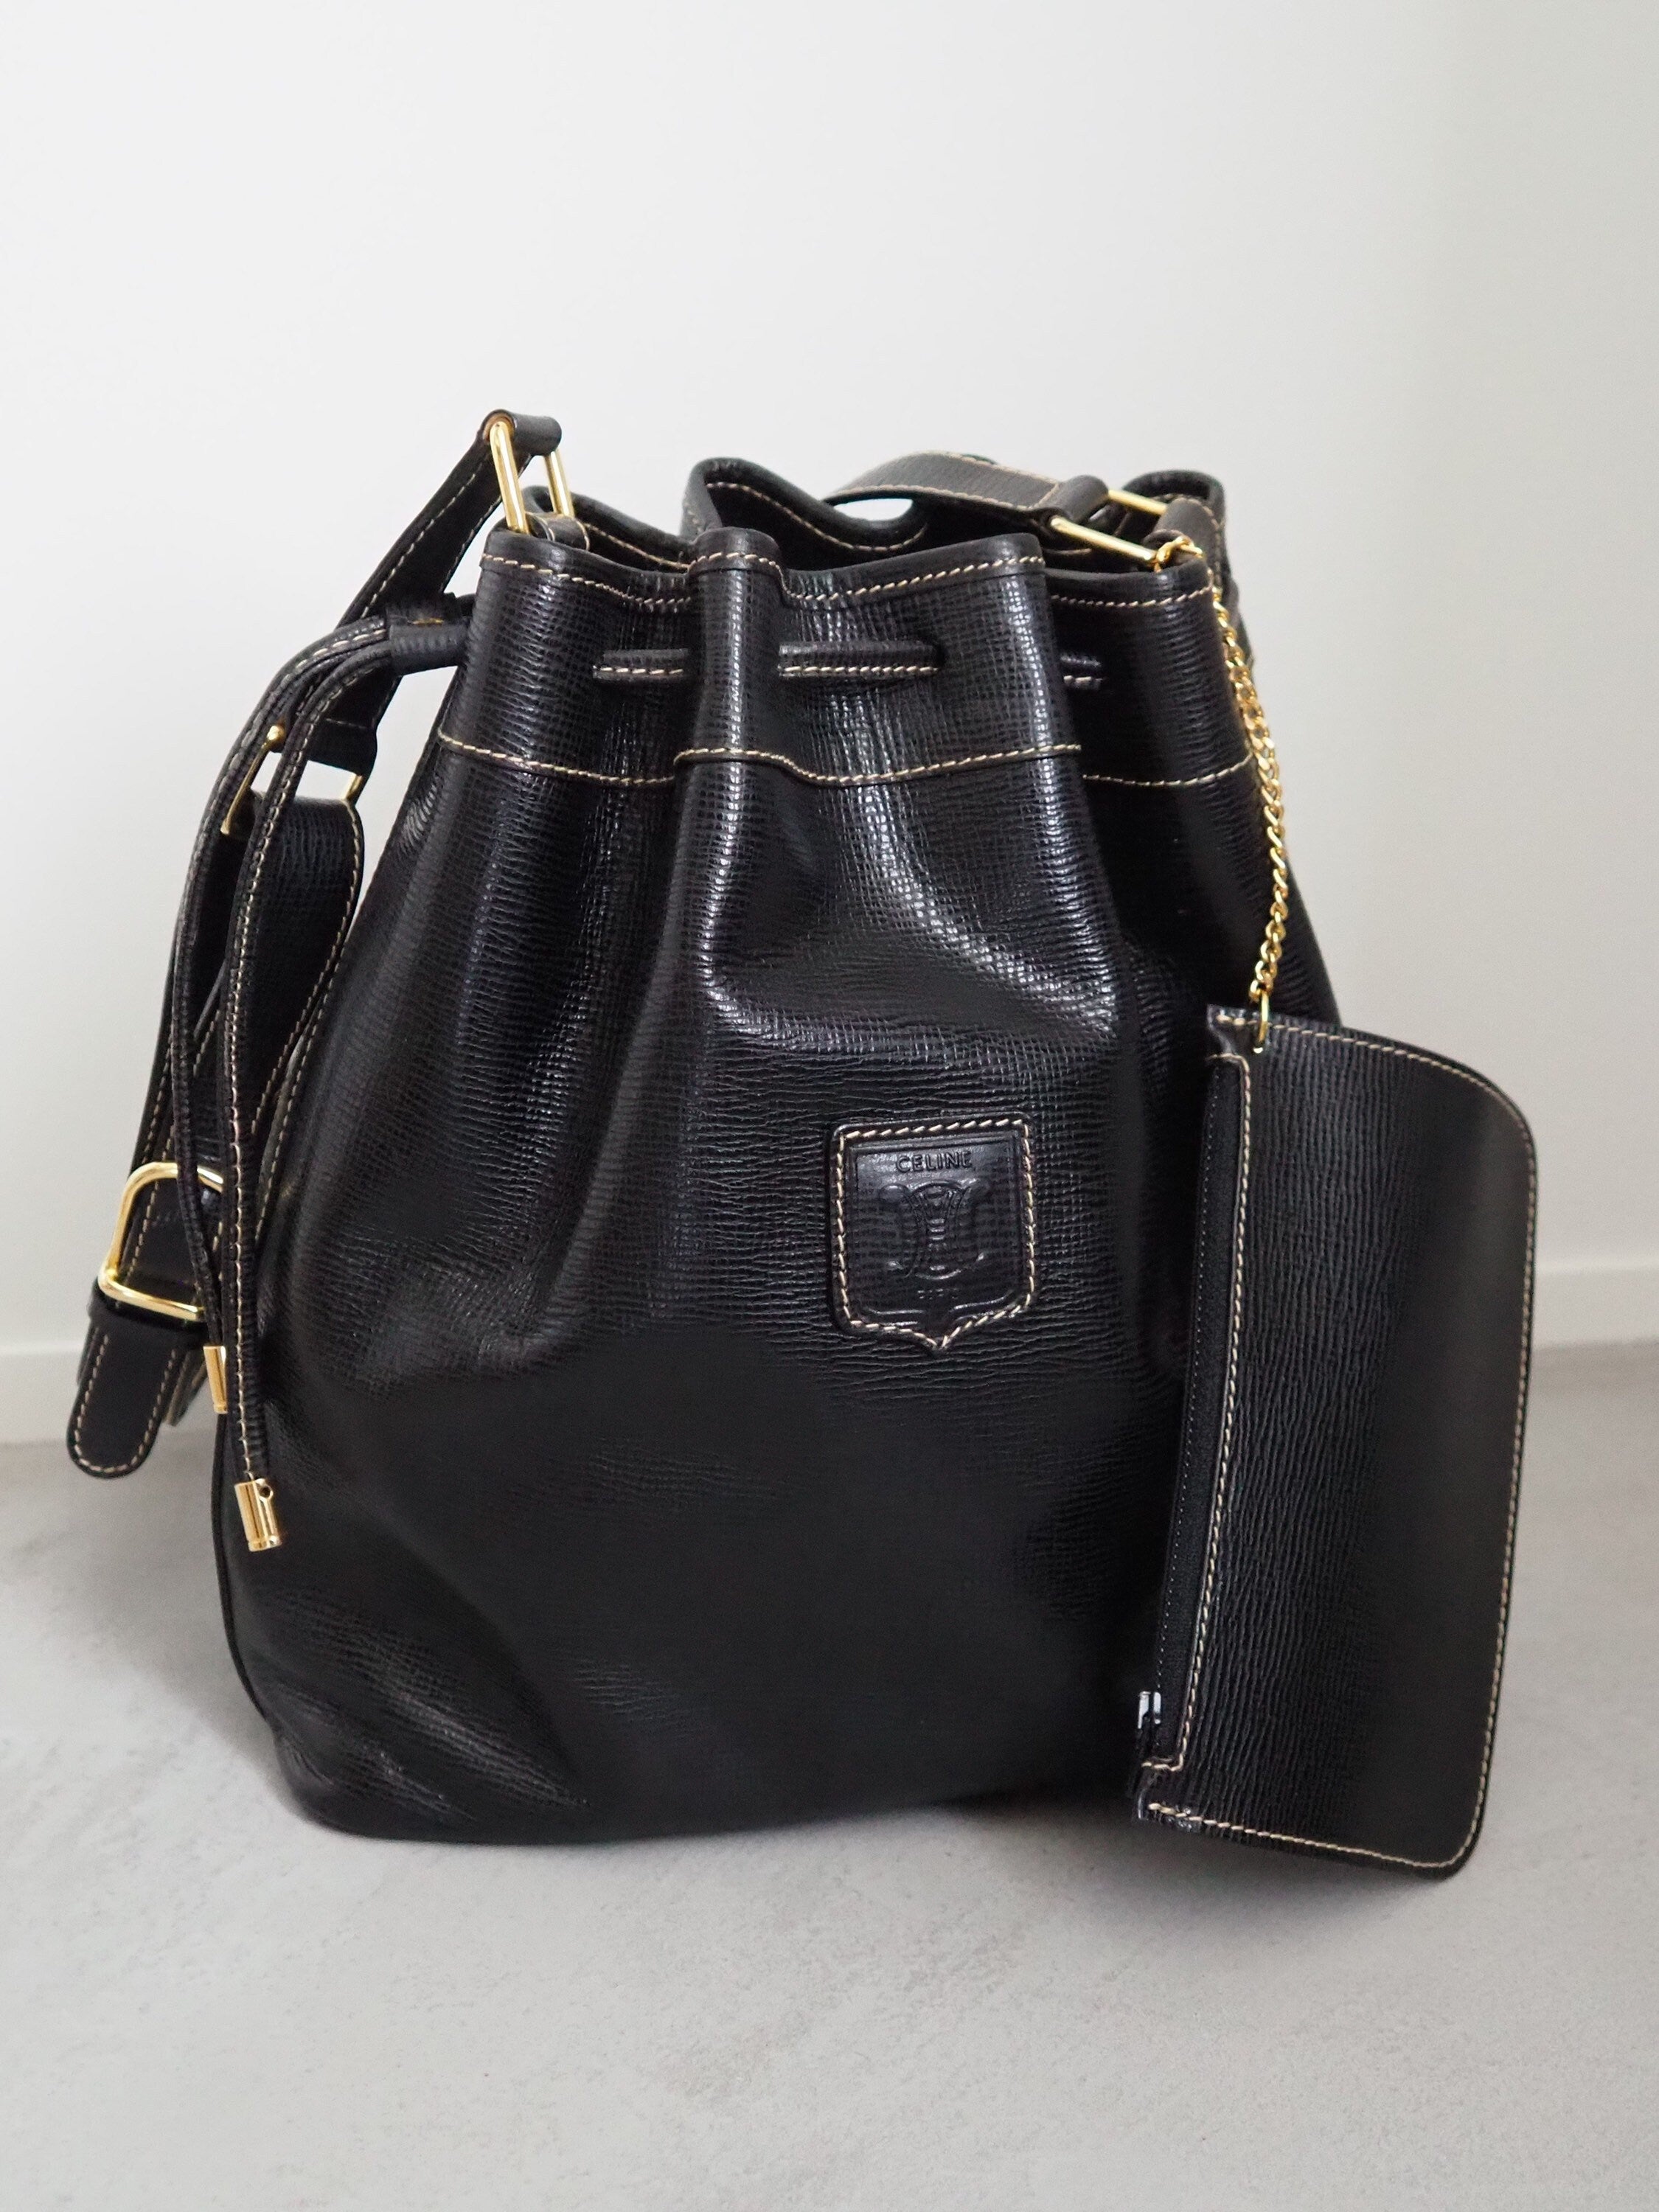 CELINE Drawstring Bucket Shoulder Bag Black Leather Authentic Vintage